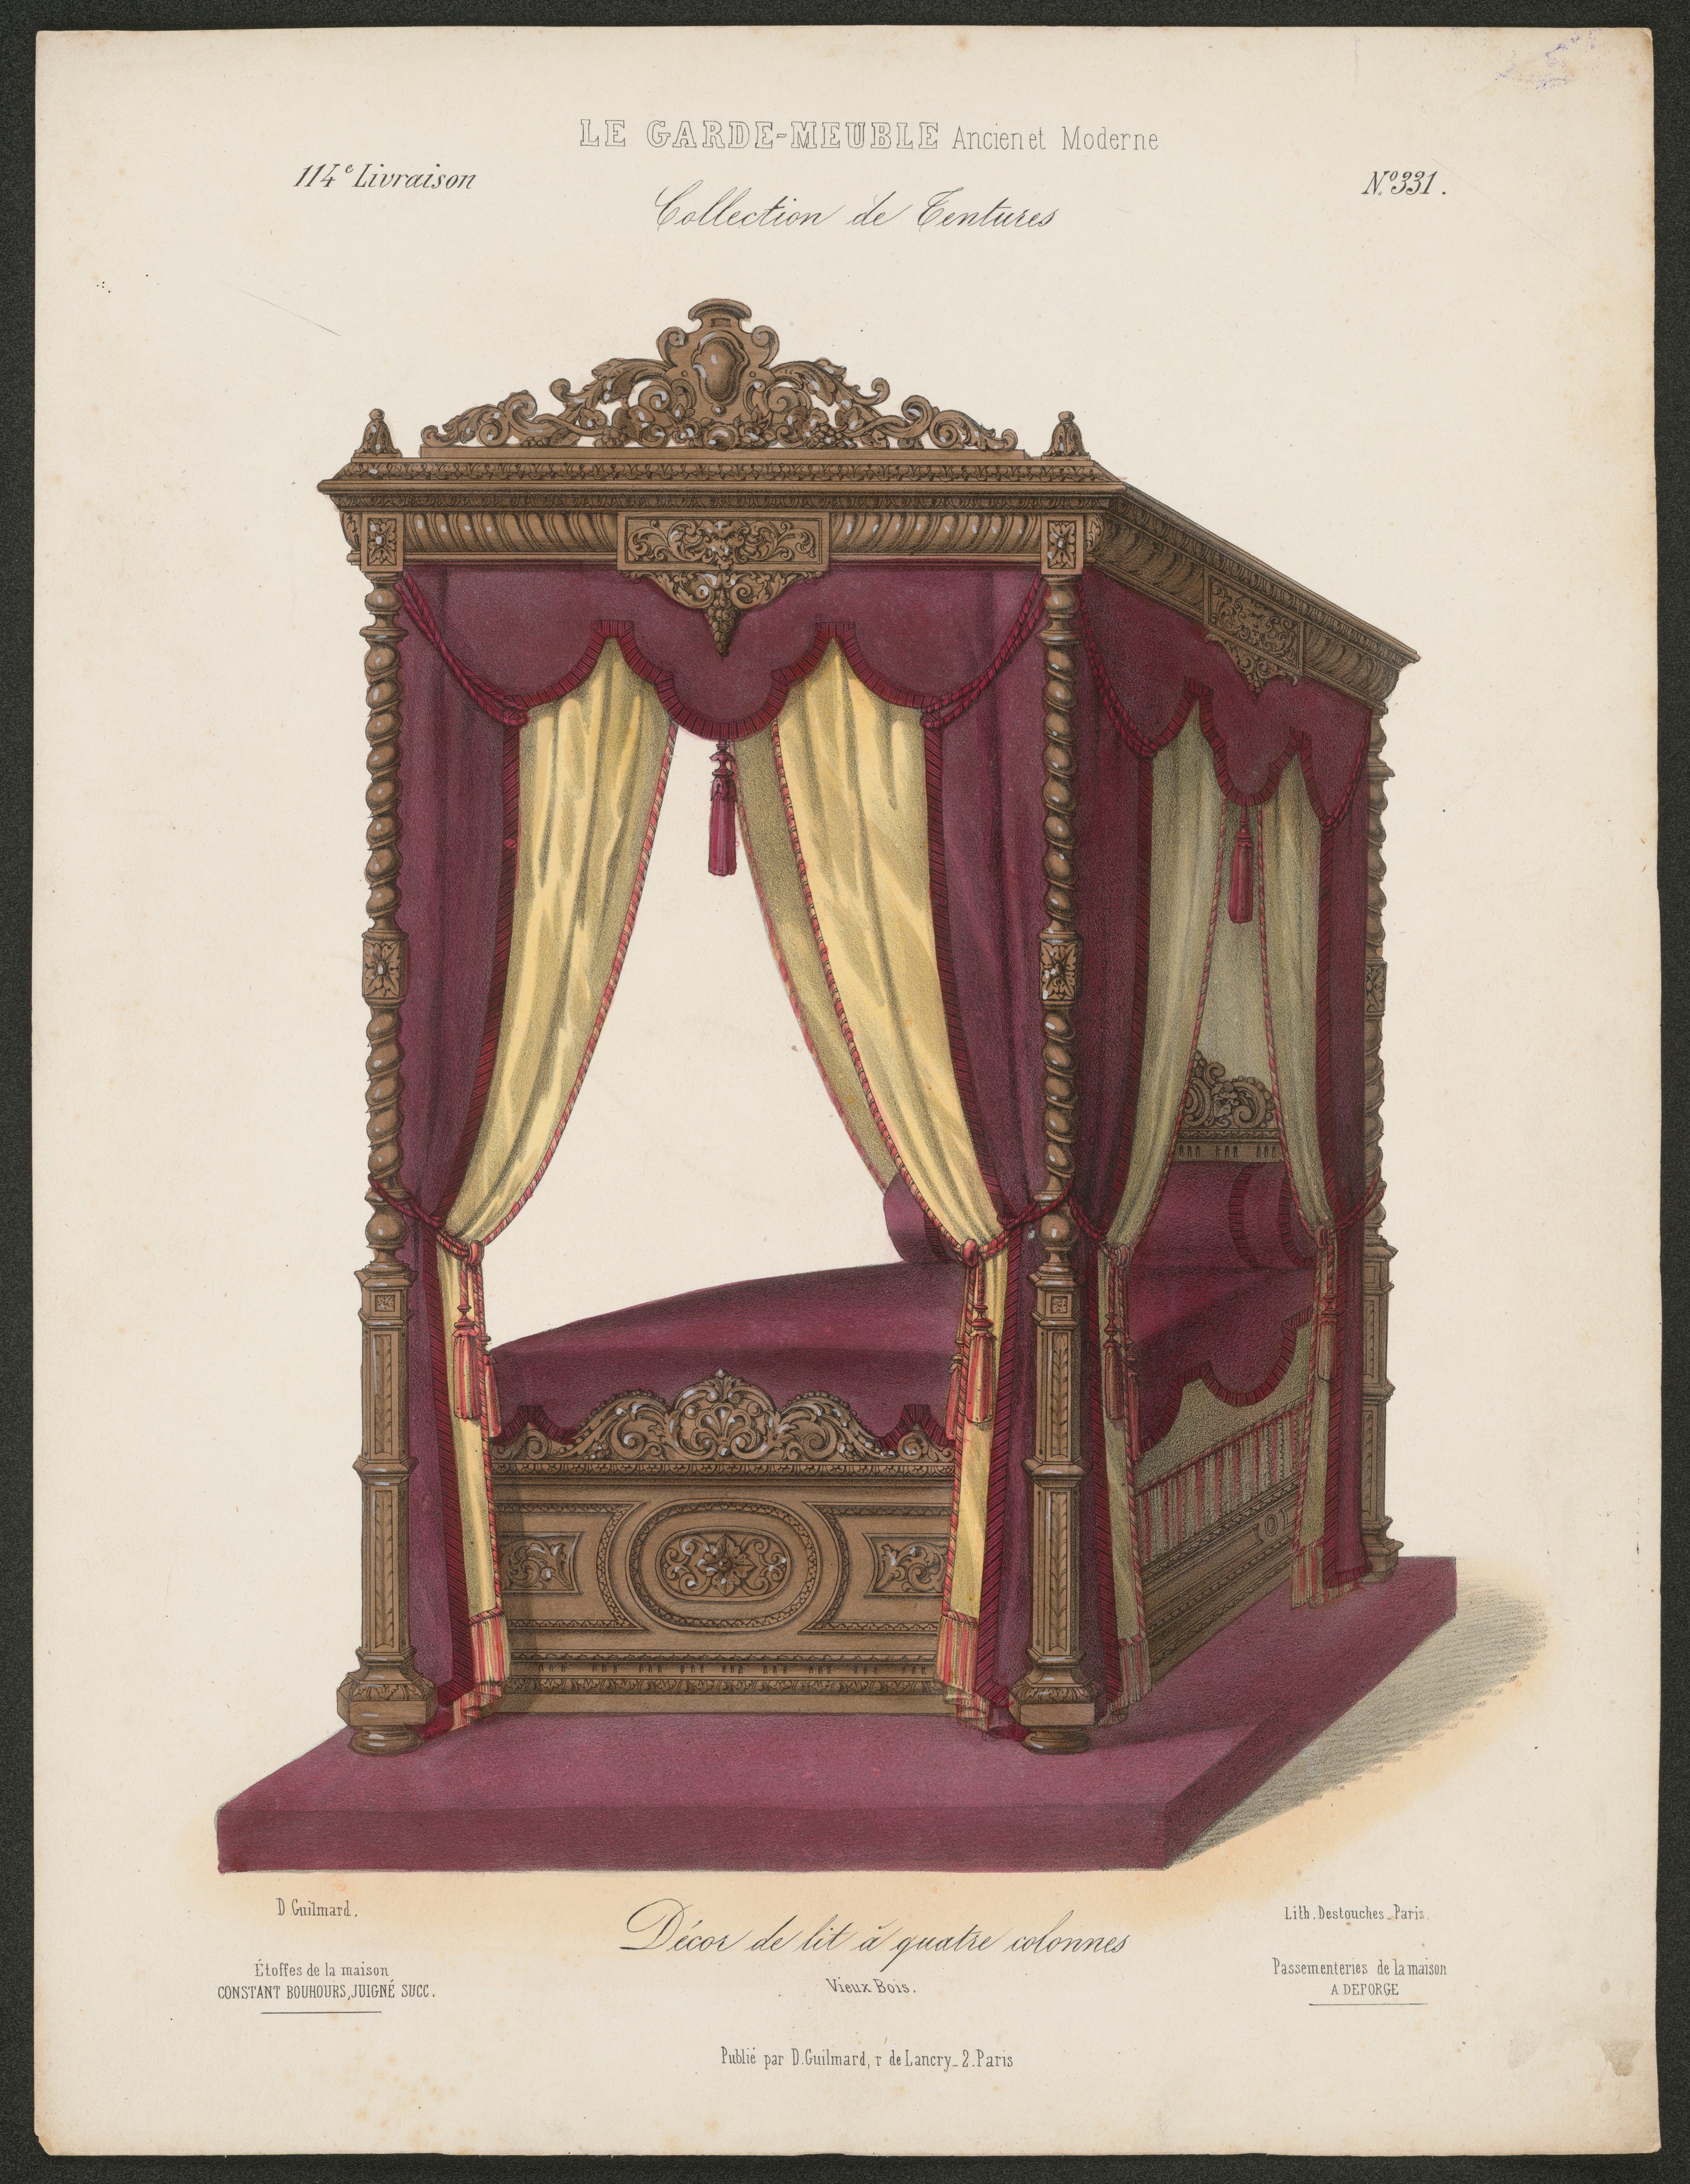 "Décor de lit á quatre colonnes", aus: Le Garde-meuble (Stiftung Fürst-Pückler-Museum Park und Schloss Branitz Public Domain Mark)